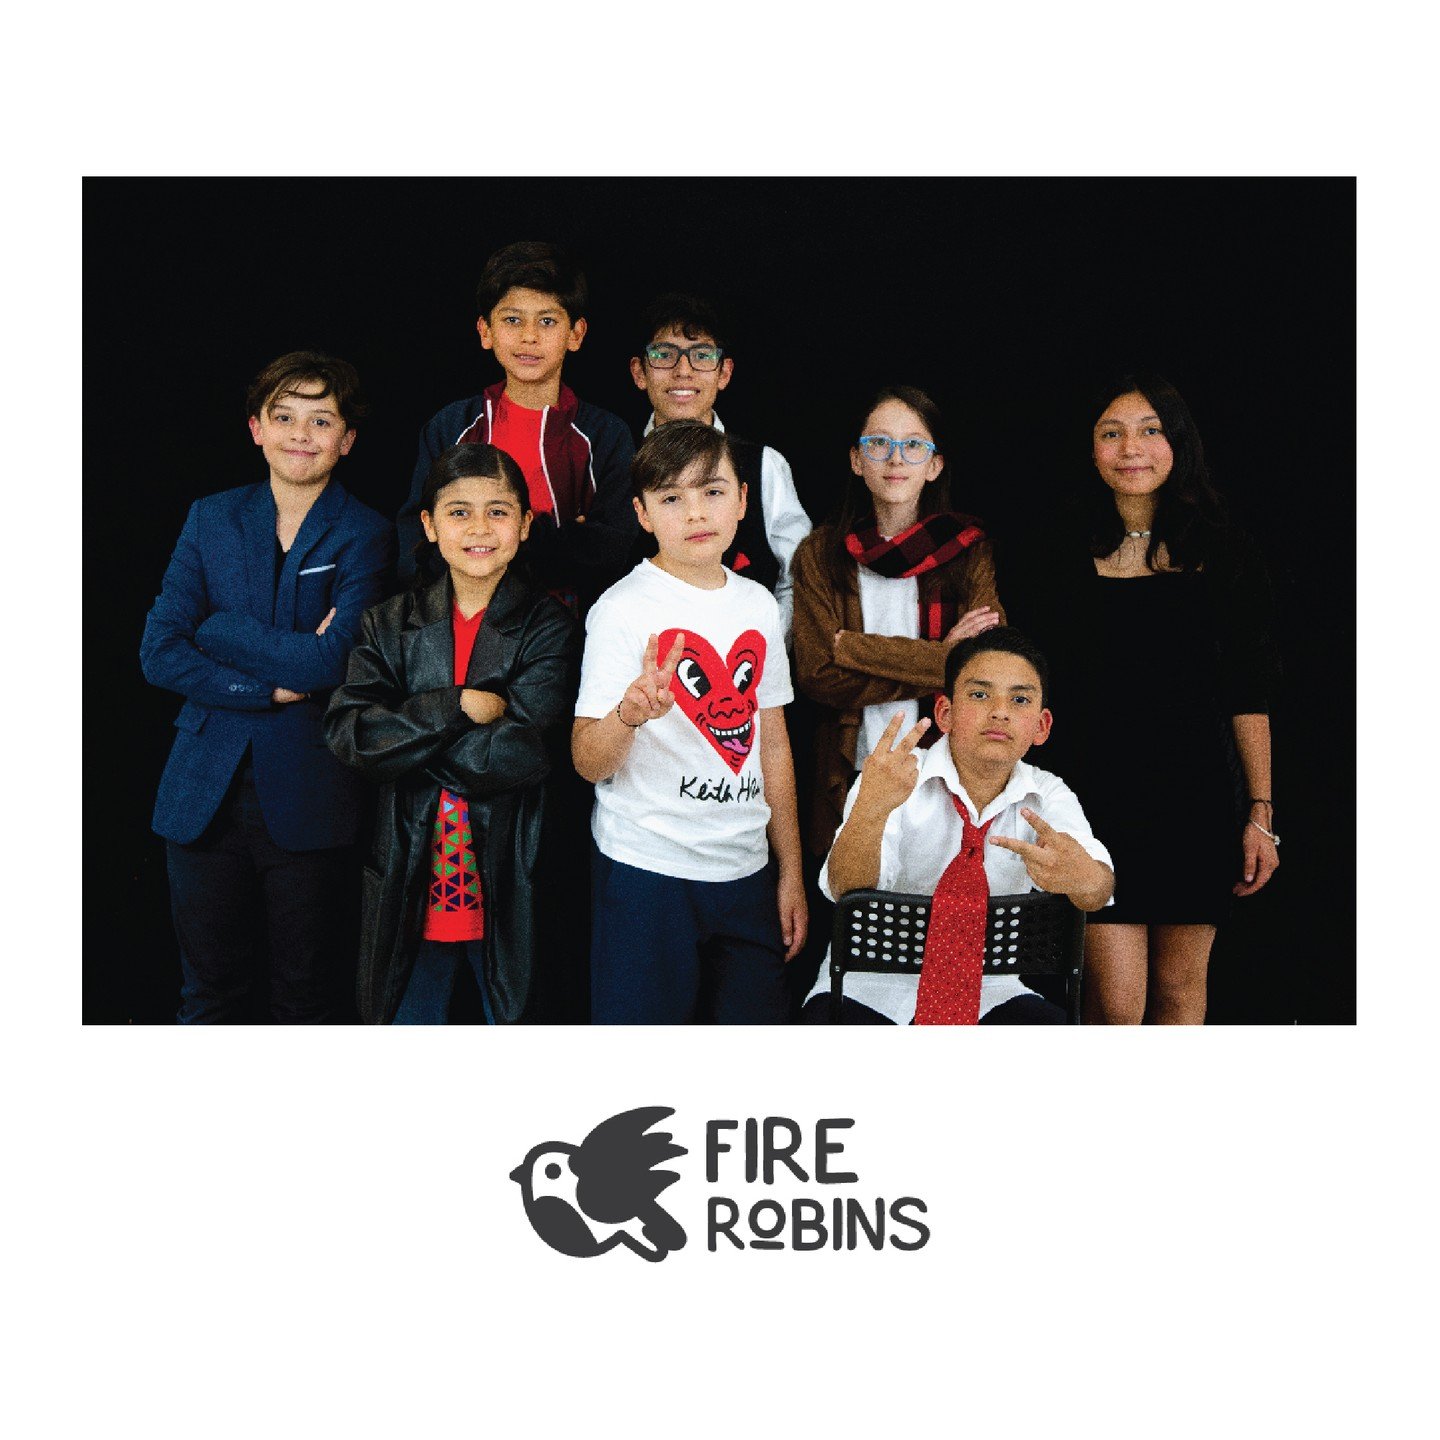 Esta banda estuvo realmente ON FIRE, y rockearon incre&iacute;ble en nuestro #MakeMusicFest 
Ellos son Fire Robins 🔥🤟

#kidsthatrock #delsalonalescenario